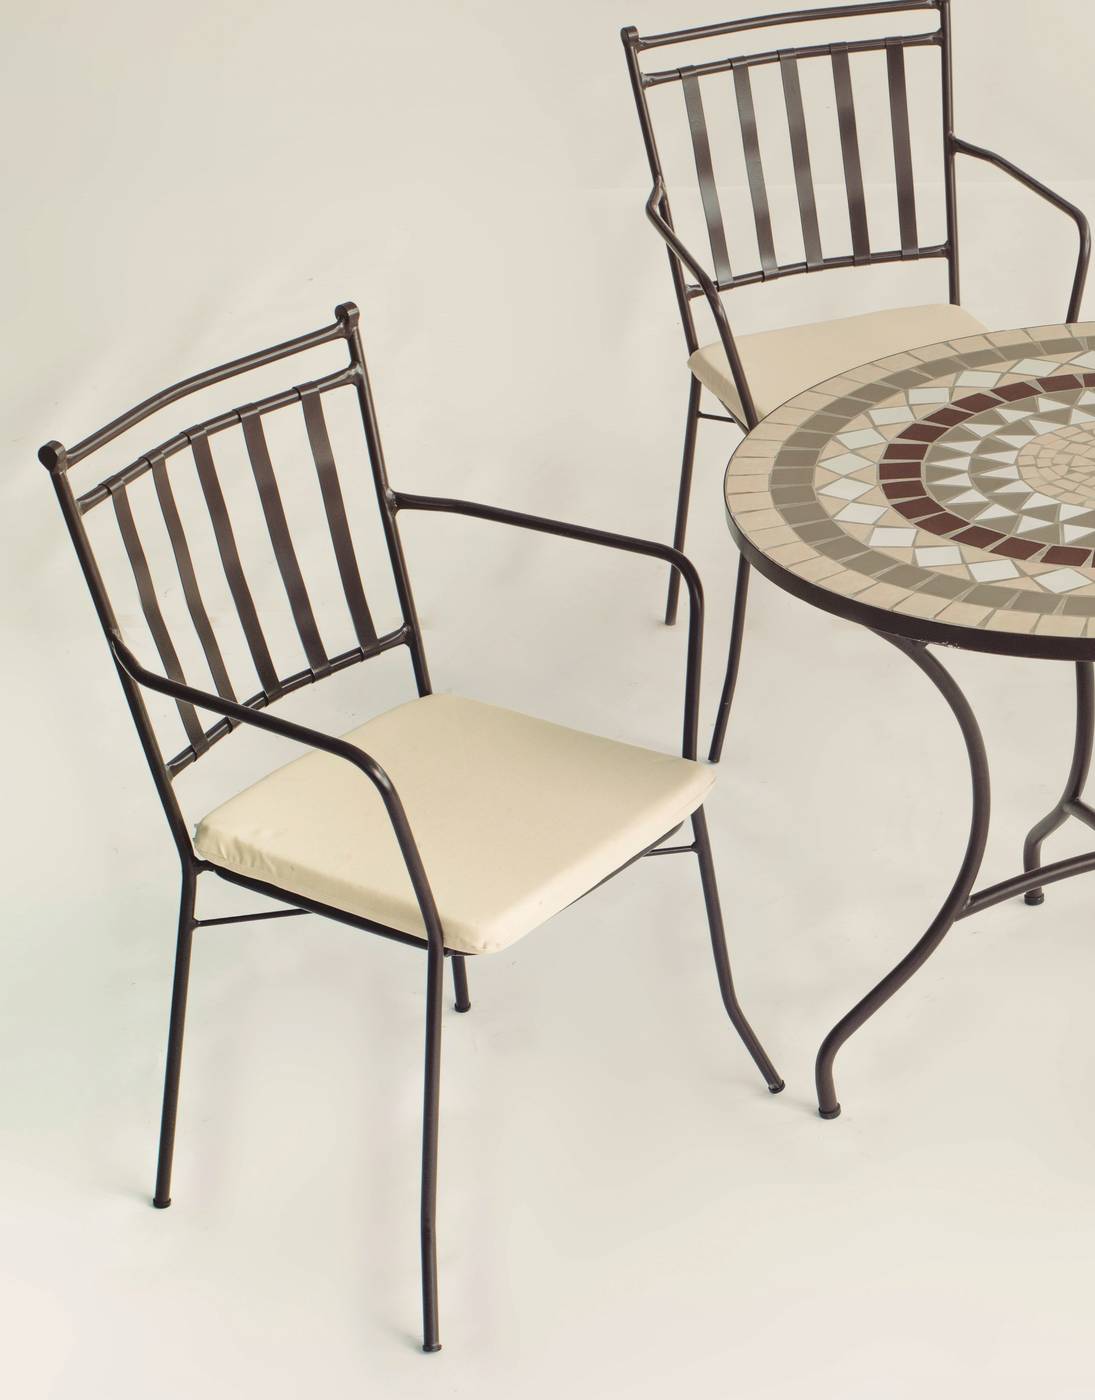 Conjunto Mosaico Zaira140-Shifa - Conjunto de forja color bronce: mesa con tablero mosaico de 140 cm + 6 sillones con cojines asiento.